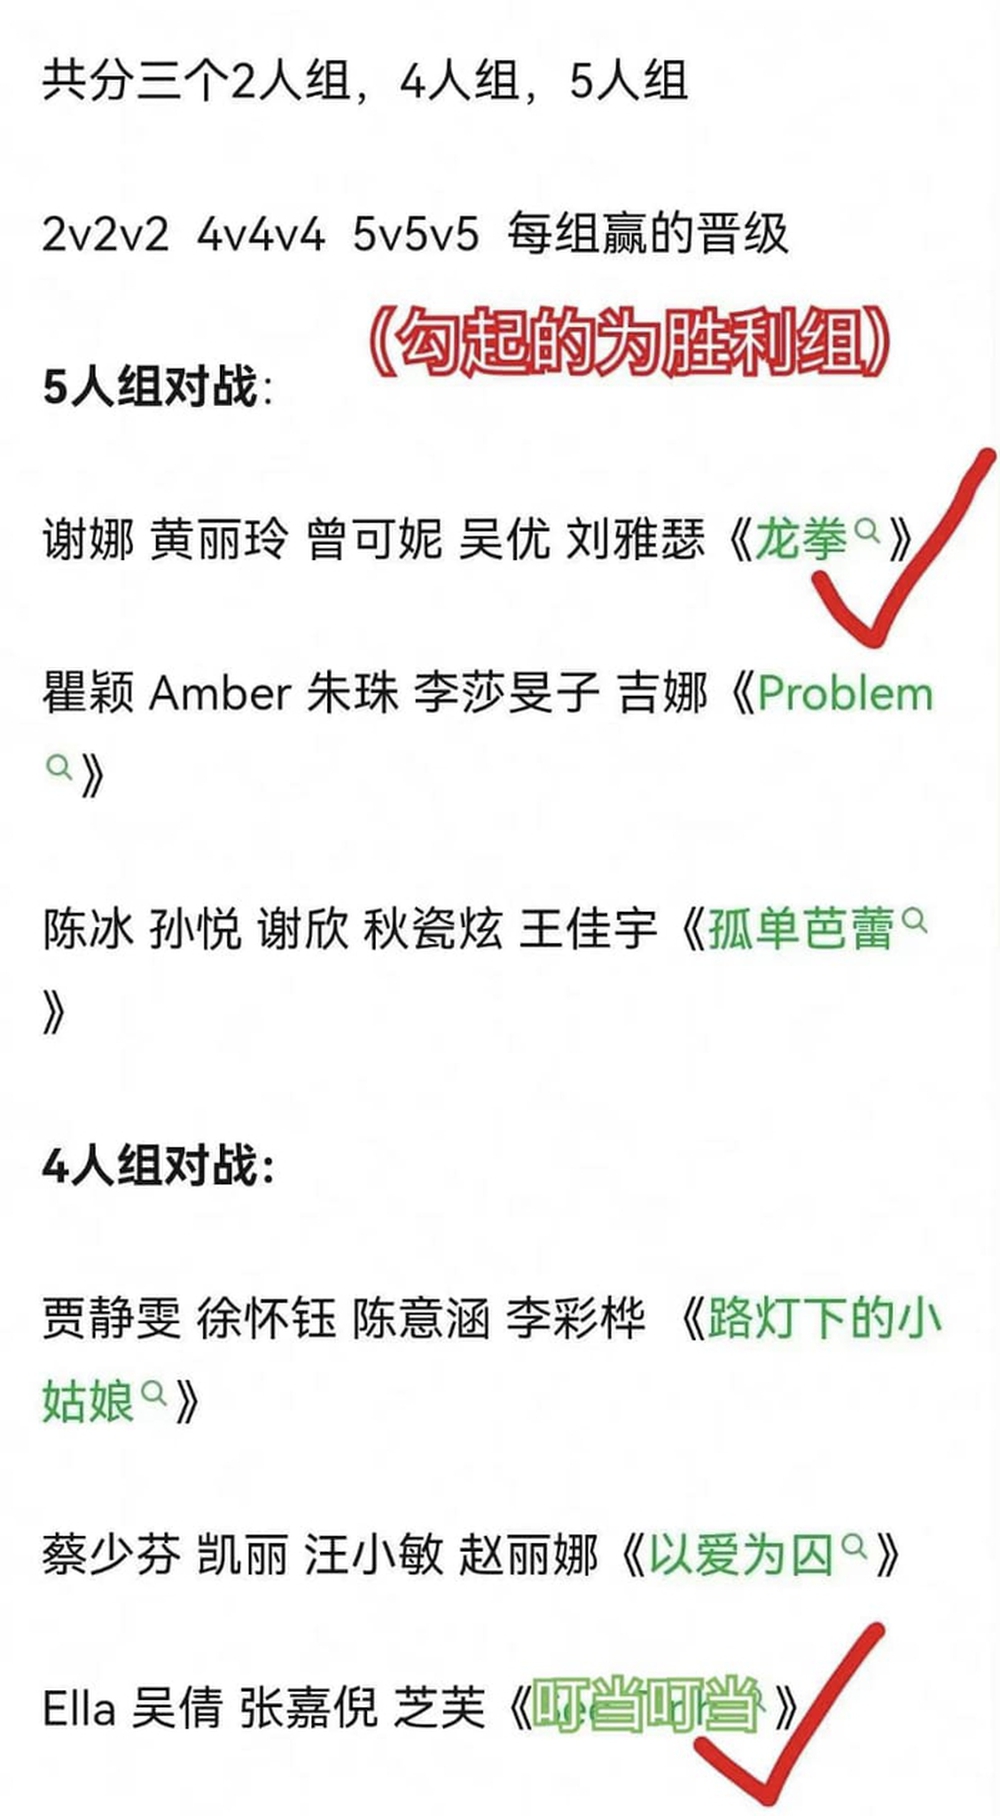 Chi Pu hát See Tình tại show Trung Quốc, netizen thắc mắc: Ủa sao không mời luôn Hoàng Thùy Linh diễn? - Ảnh 1.